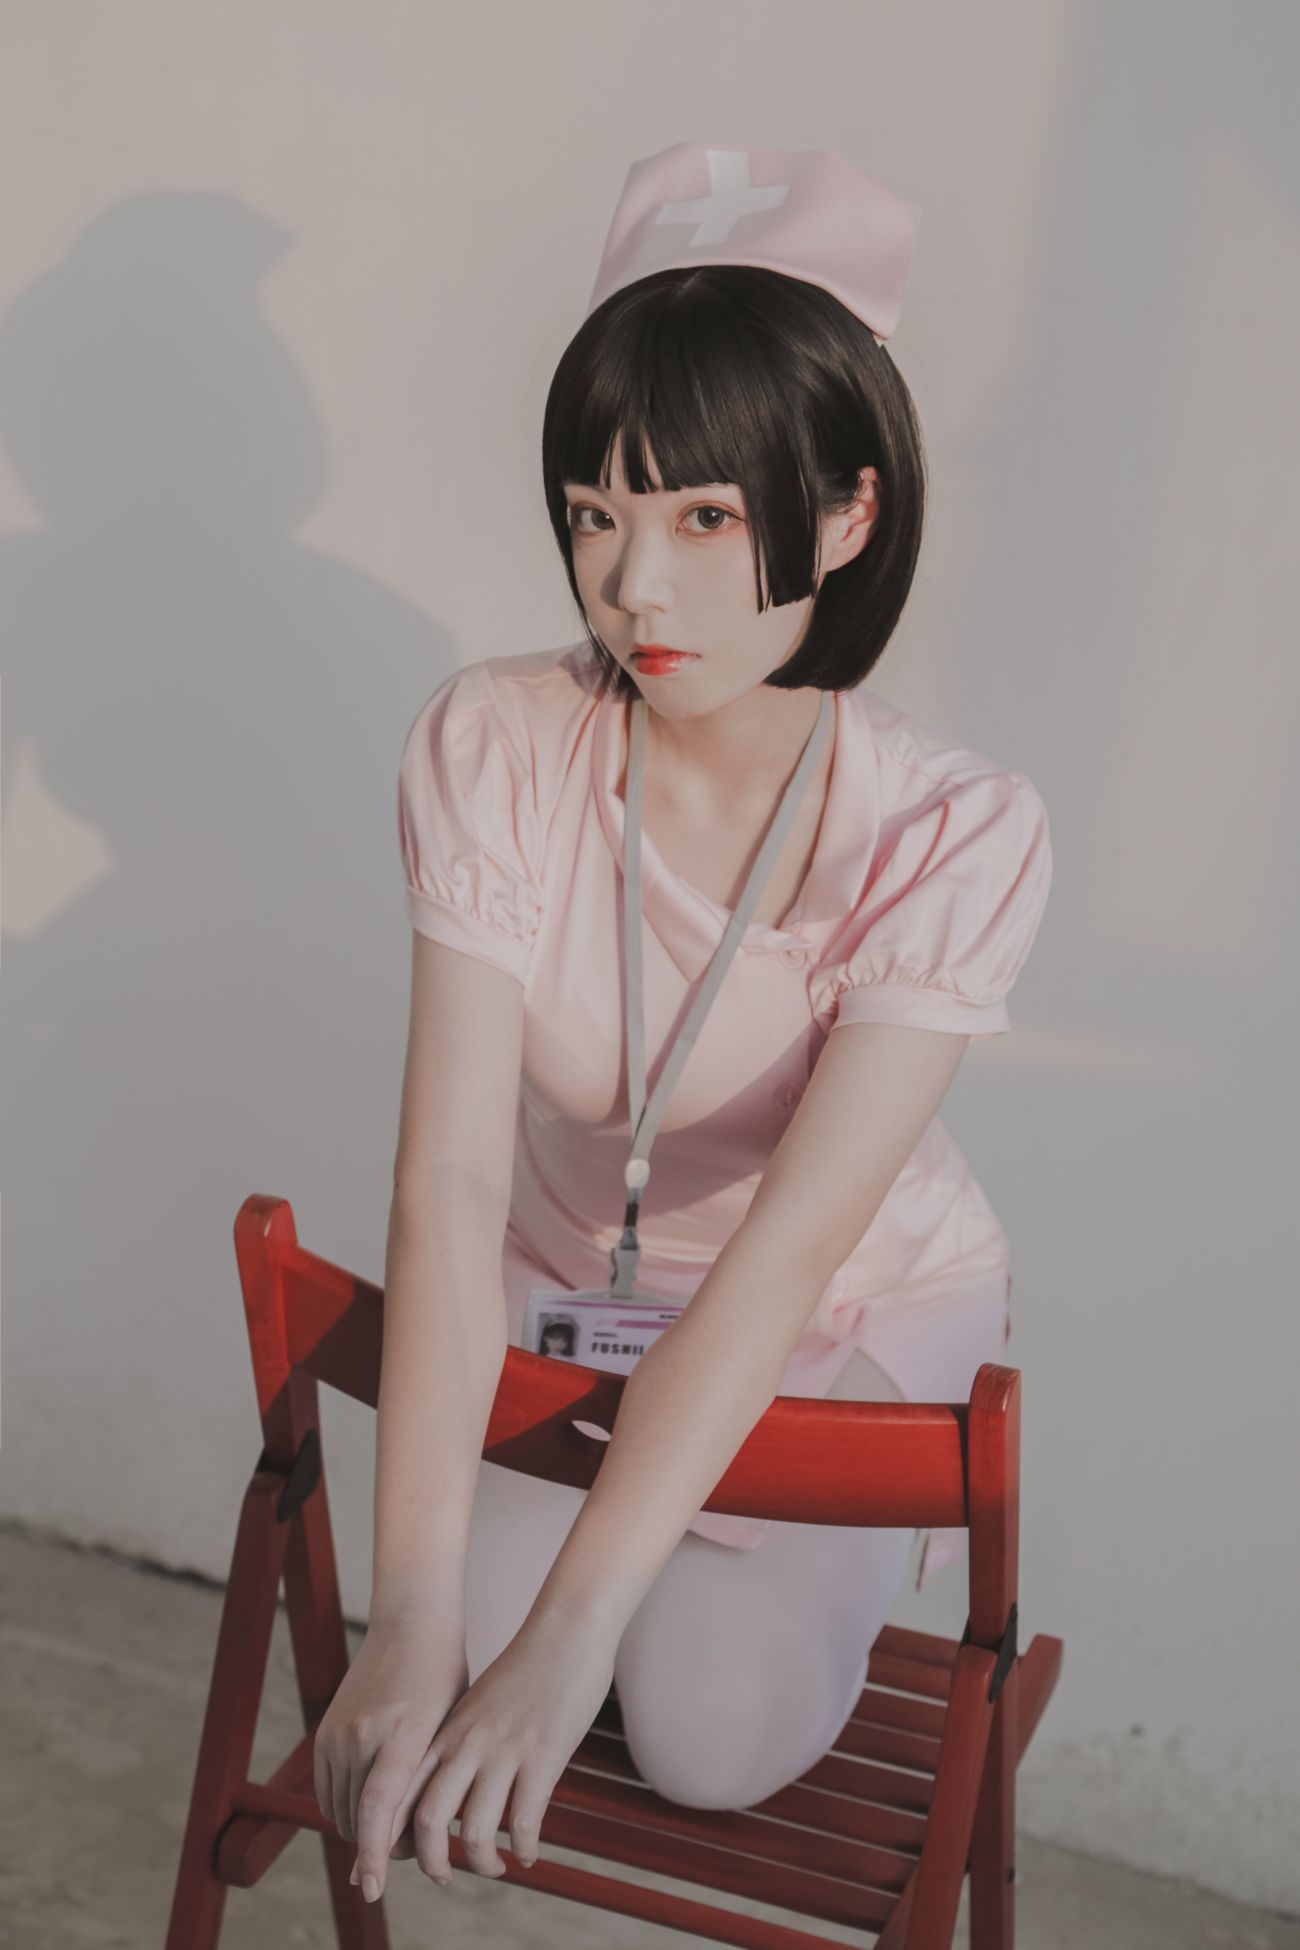 微博美少女Fushii海堂Cosplay性感写真护士 (24)